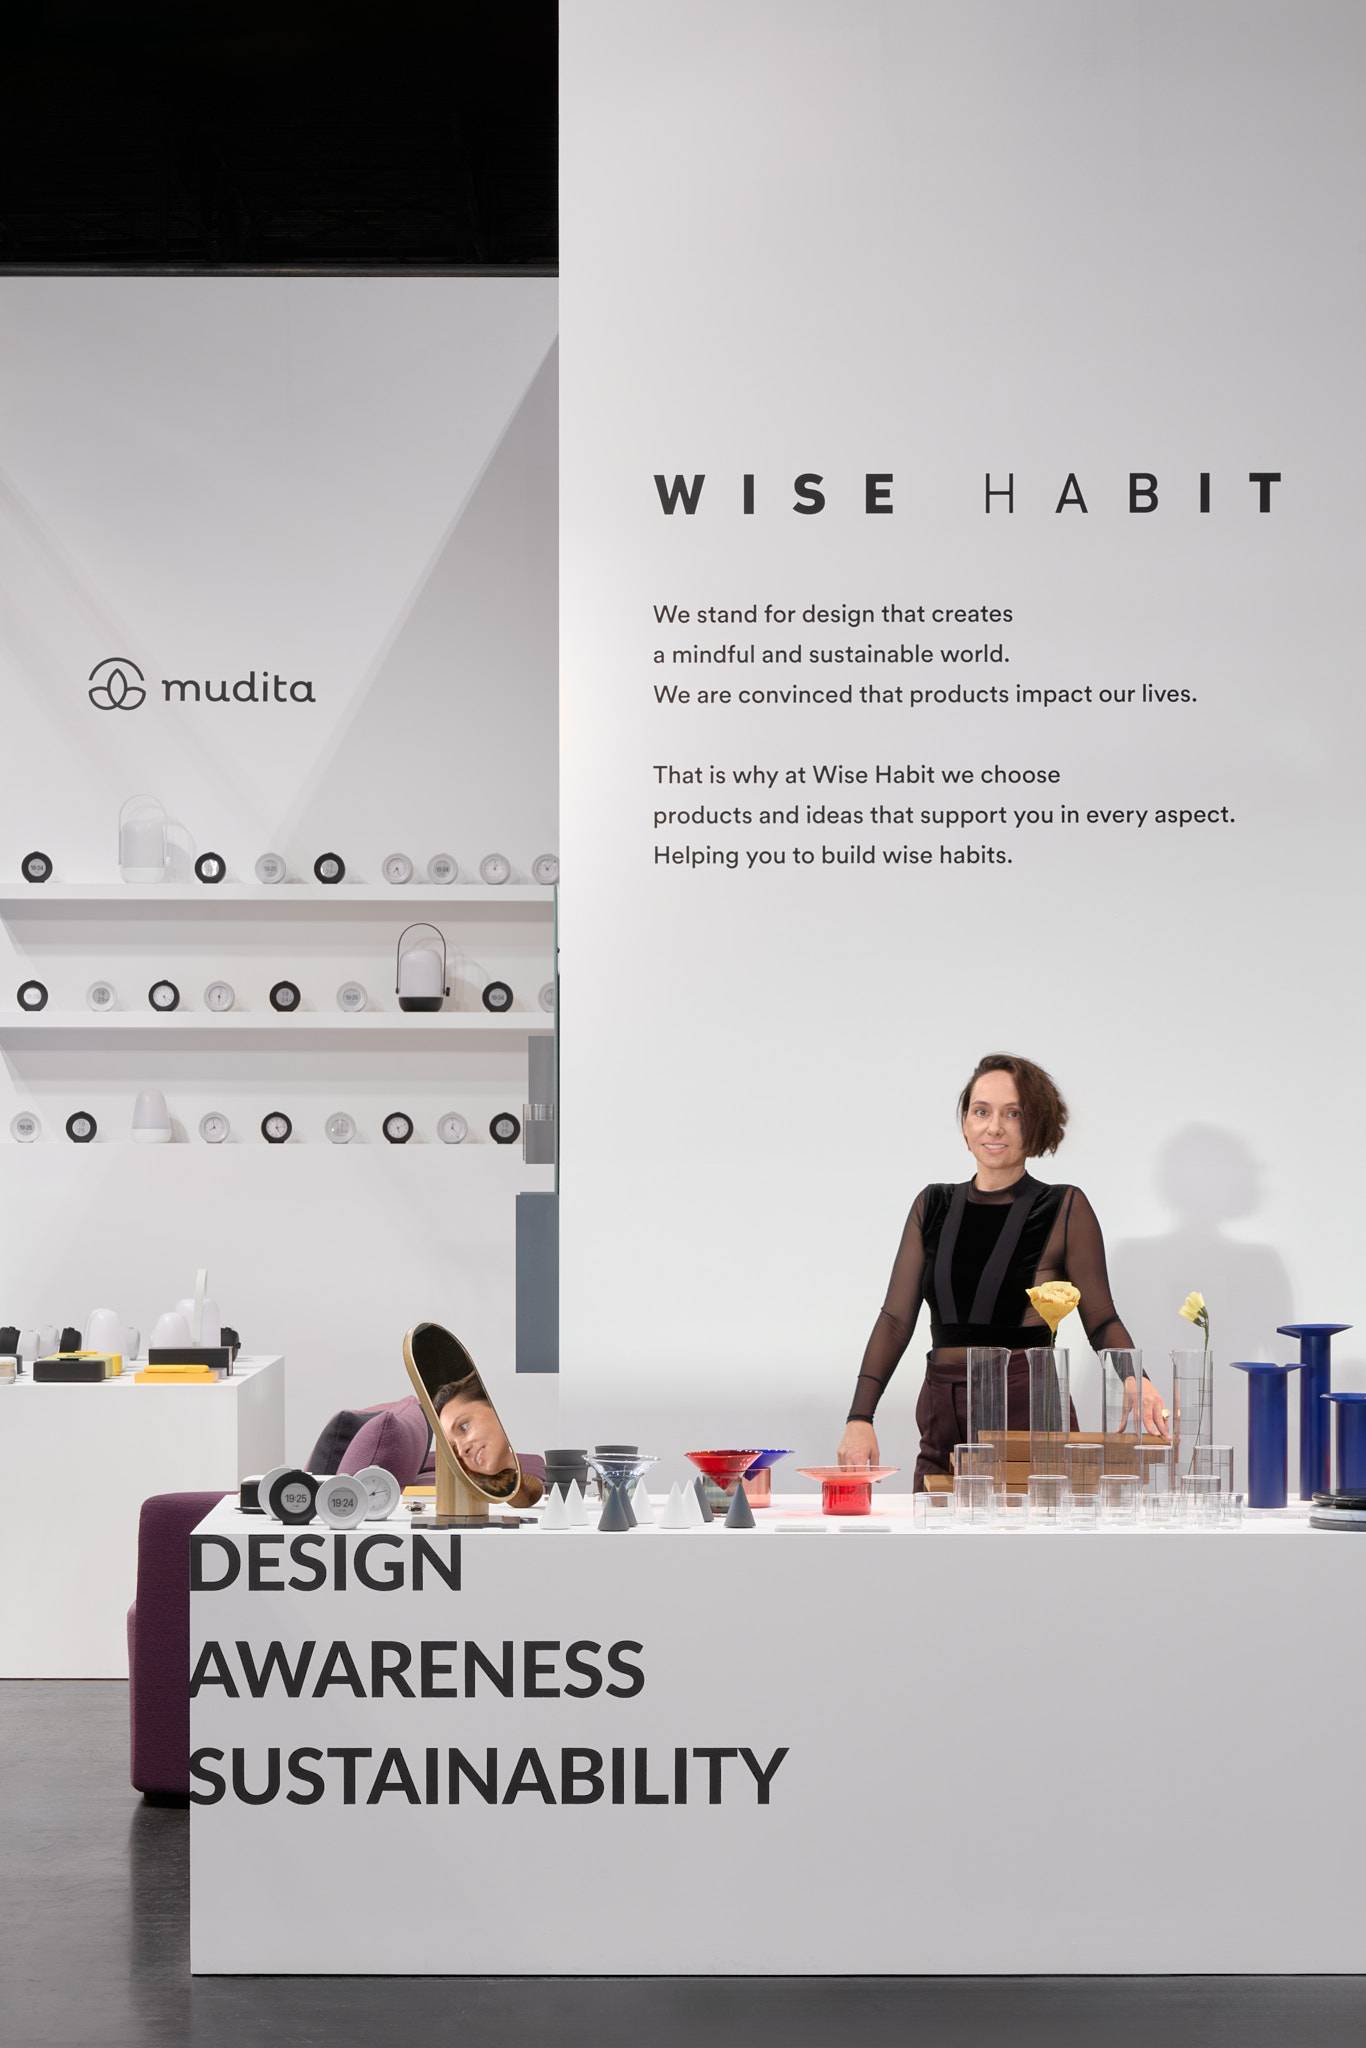 Wise Habit: jak stołeczna marka stawia na mądry design. Jakie marki kupimy w Wise Habit? Jakie wartości im przyświecają? CEO Marcelina Plichta-Wabnik opowiada o kształtowaniu mądrych nawyków konsumentów.